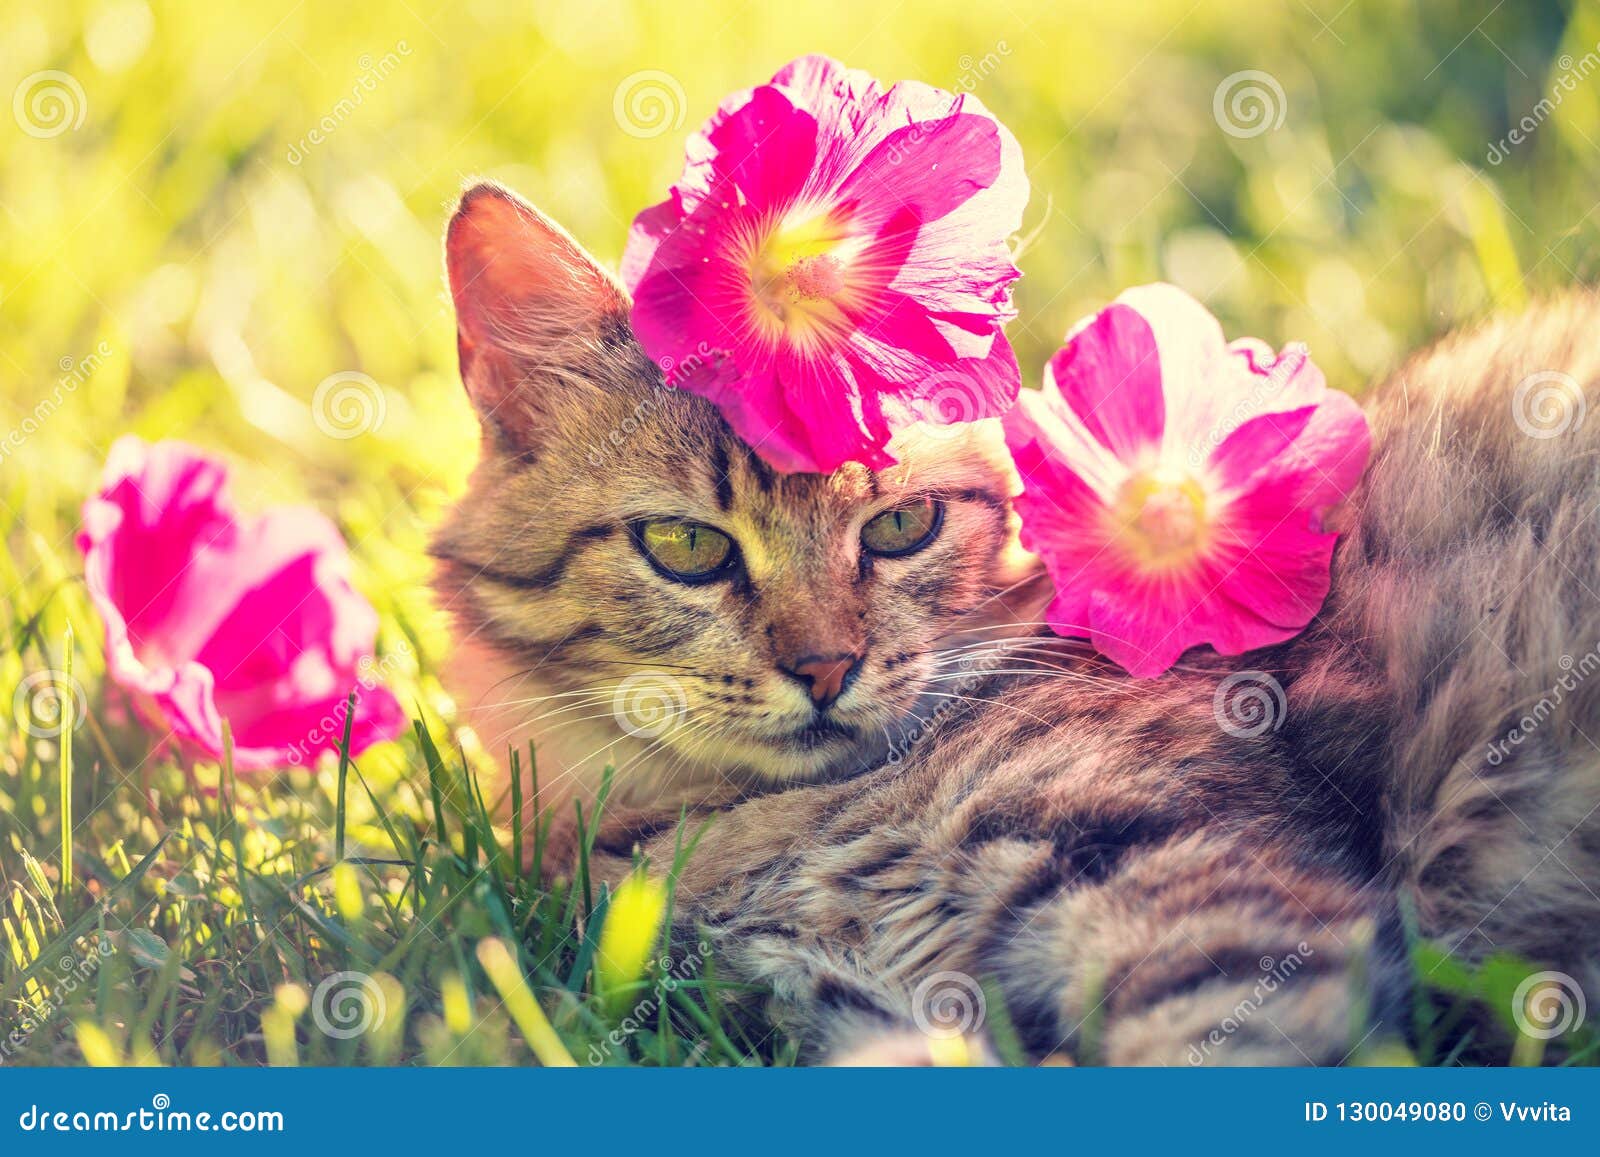 Chat Siberien Avec Des Fleurs Sur La Tete Photo Stock Image Du Siberien Avec